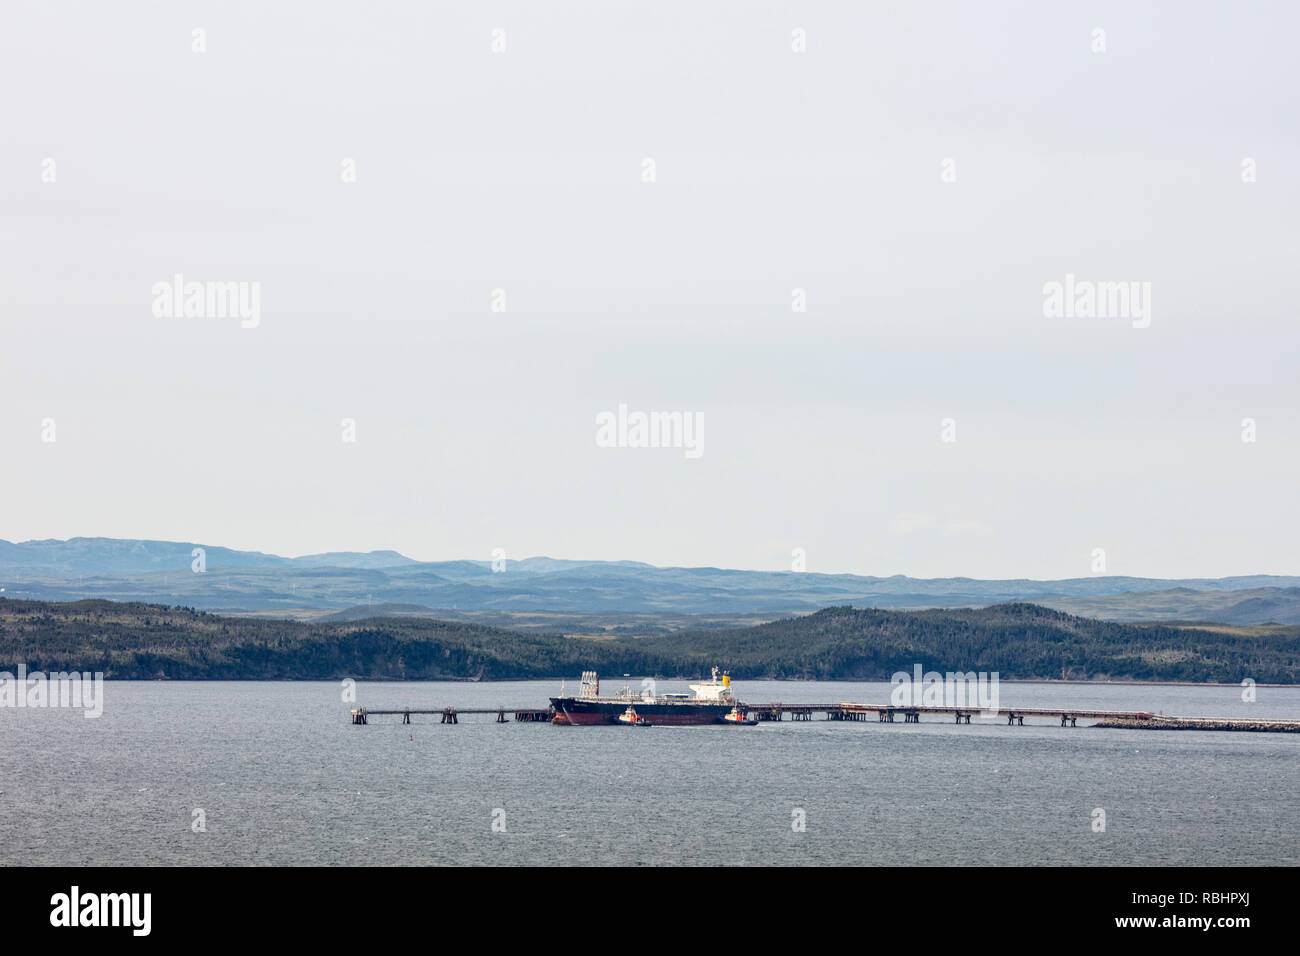 Venez PAR HASARD / ARNOLD'S COVE, Terre-Neuve, Canada - le 13 août 2018 : un navire de la rive de l'Atlantique Nord de la raffinerie de pétrole à l'extérieur des villes de Banque D'Images